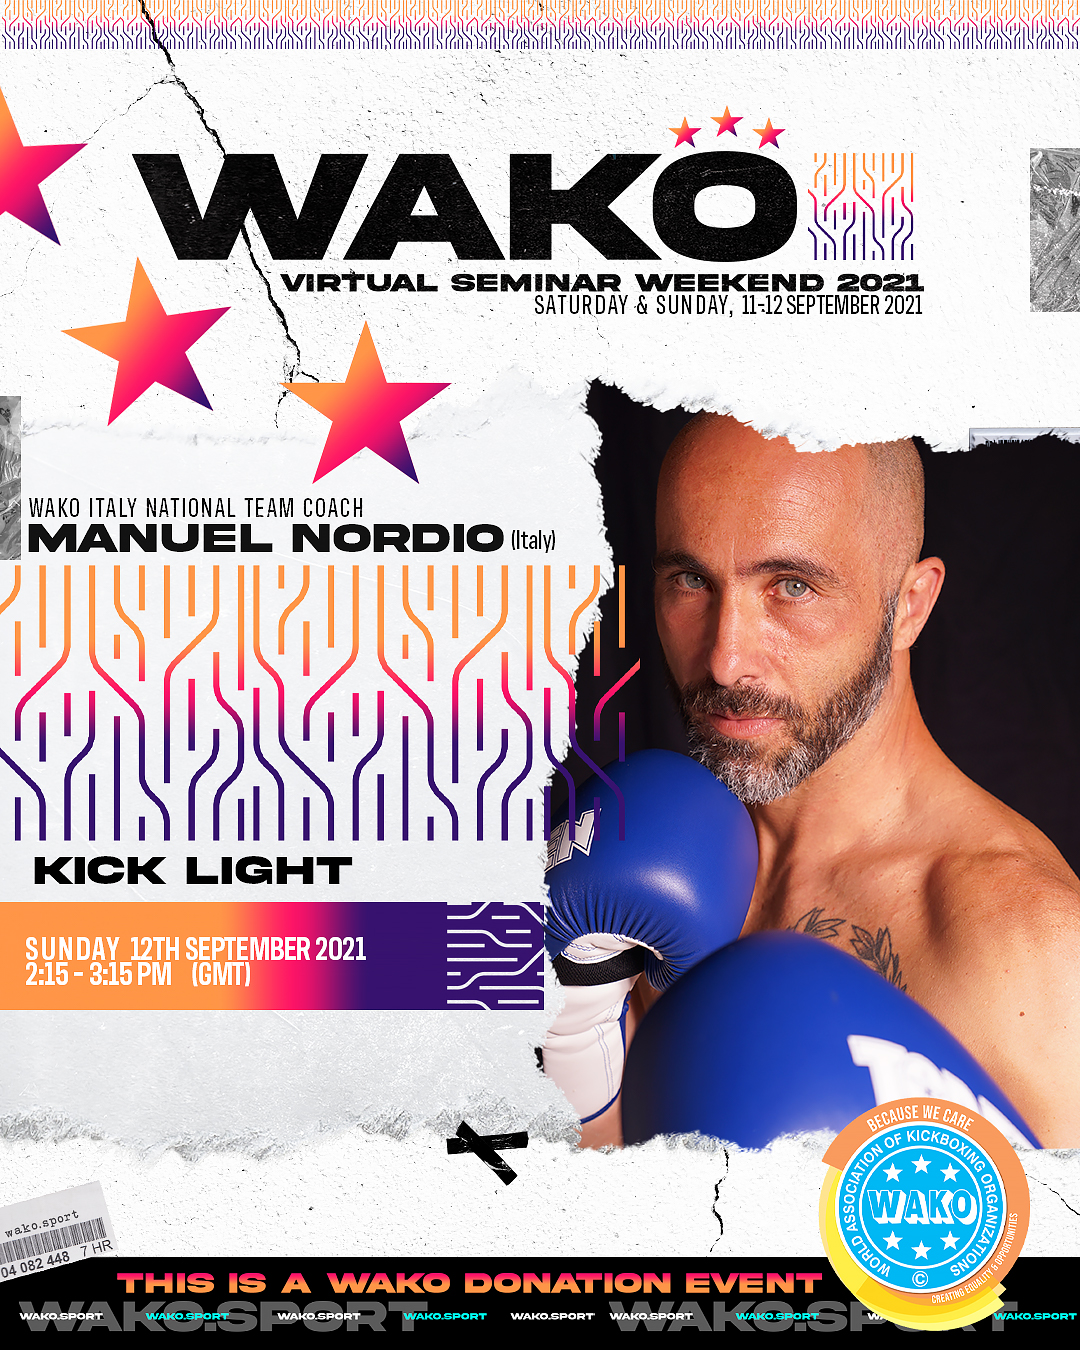 WAKO Virtual Seminar Weekend 2021 - 12 September 2:15-3:15 pm GMT -Kick Light -Manuel Nordio (ITA)